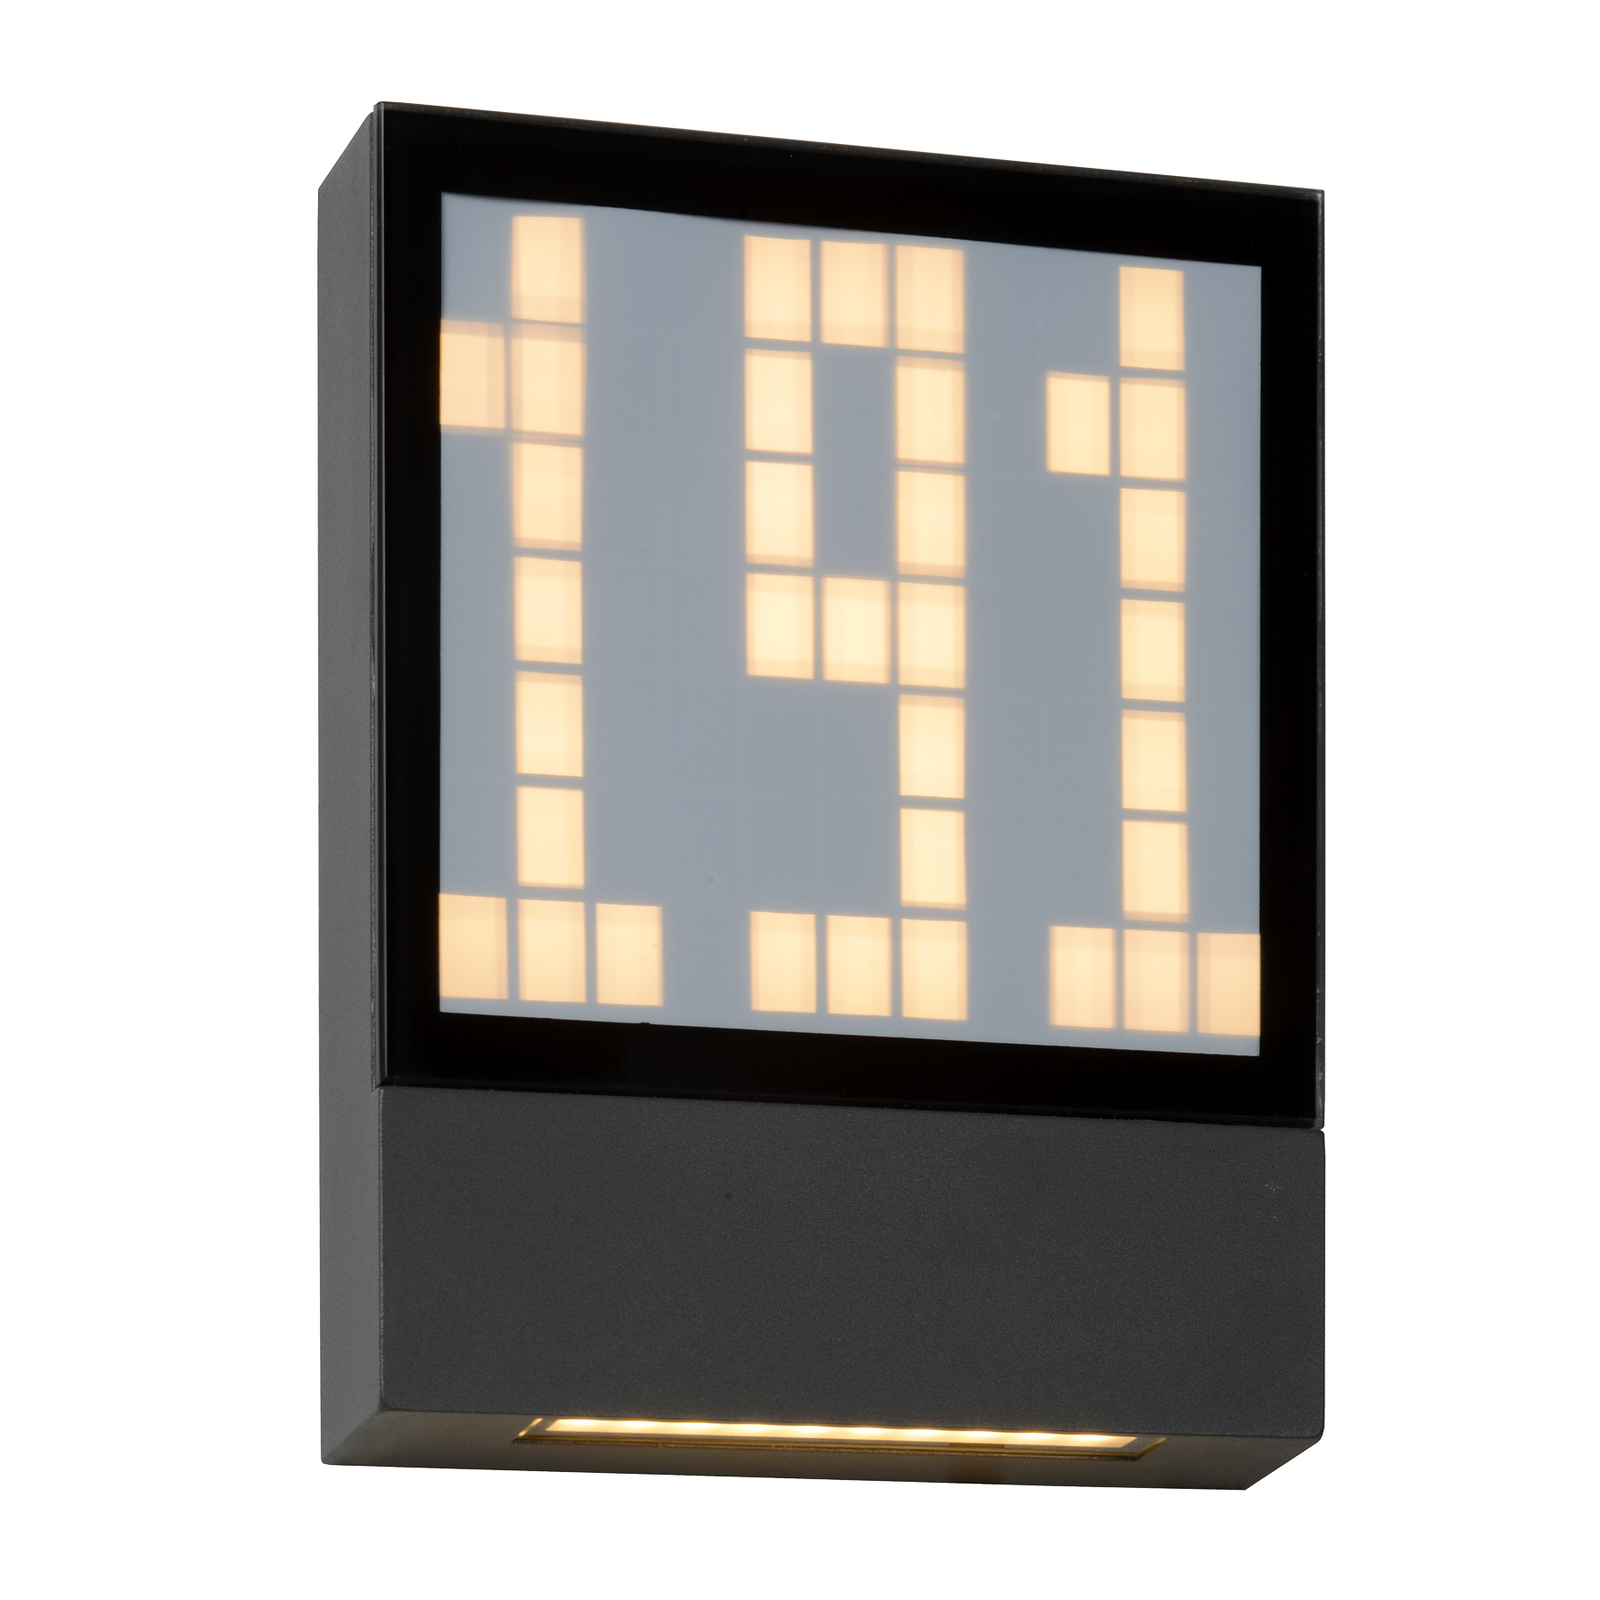 LED-Hausnummernleuchte Digit mit digitaler Anzeige